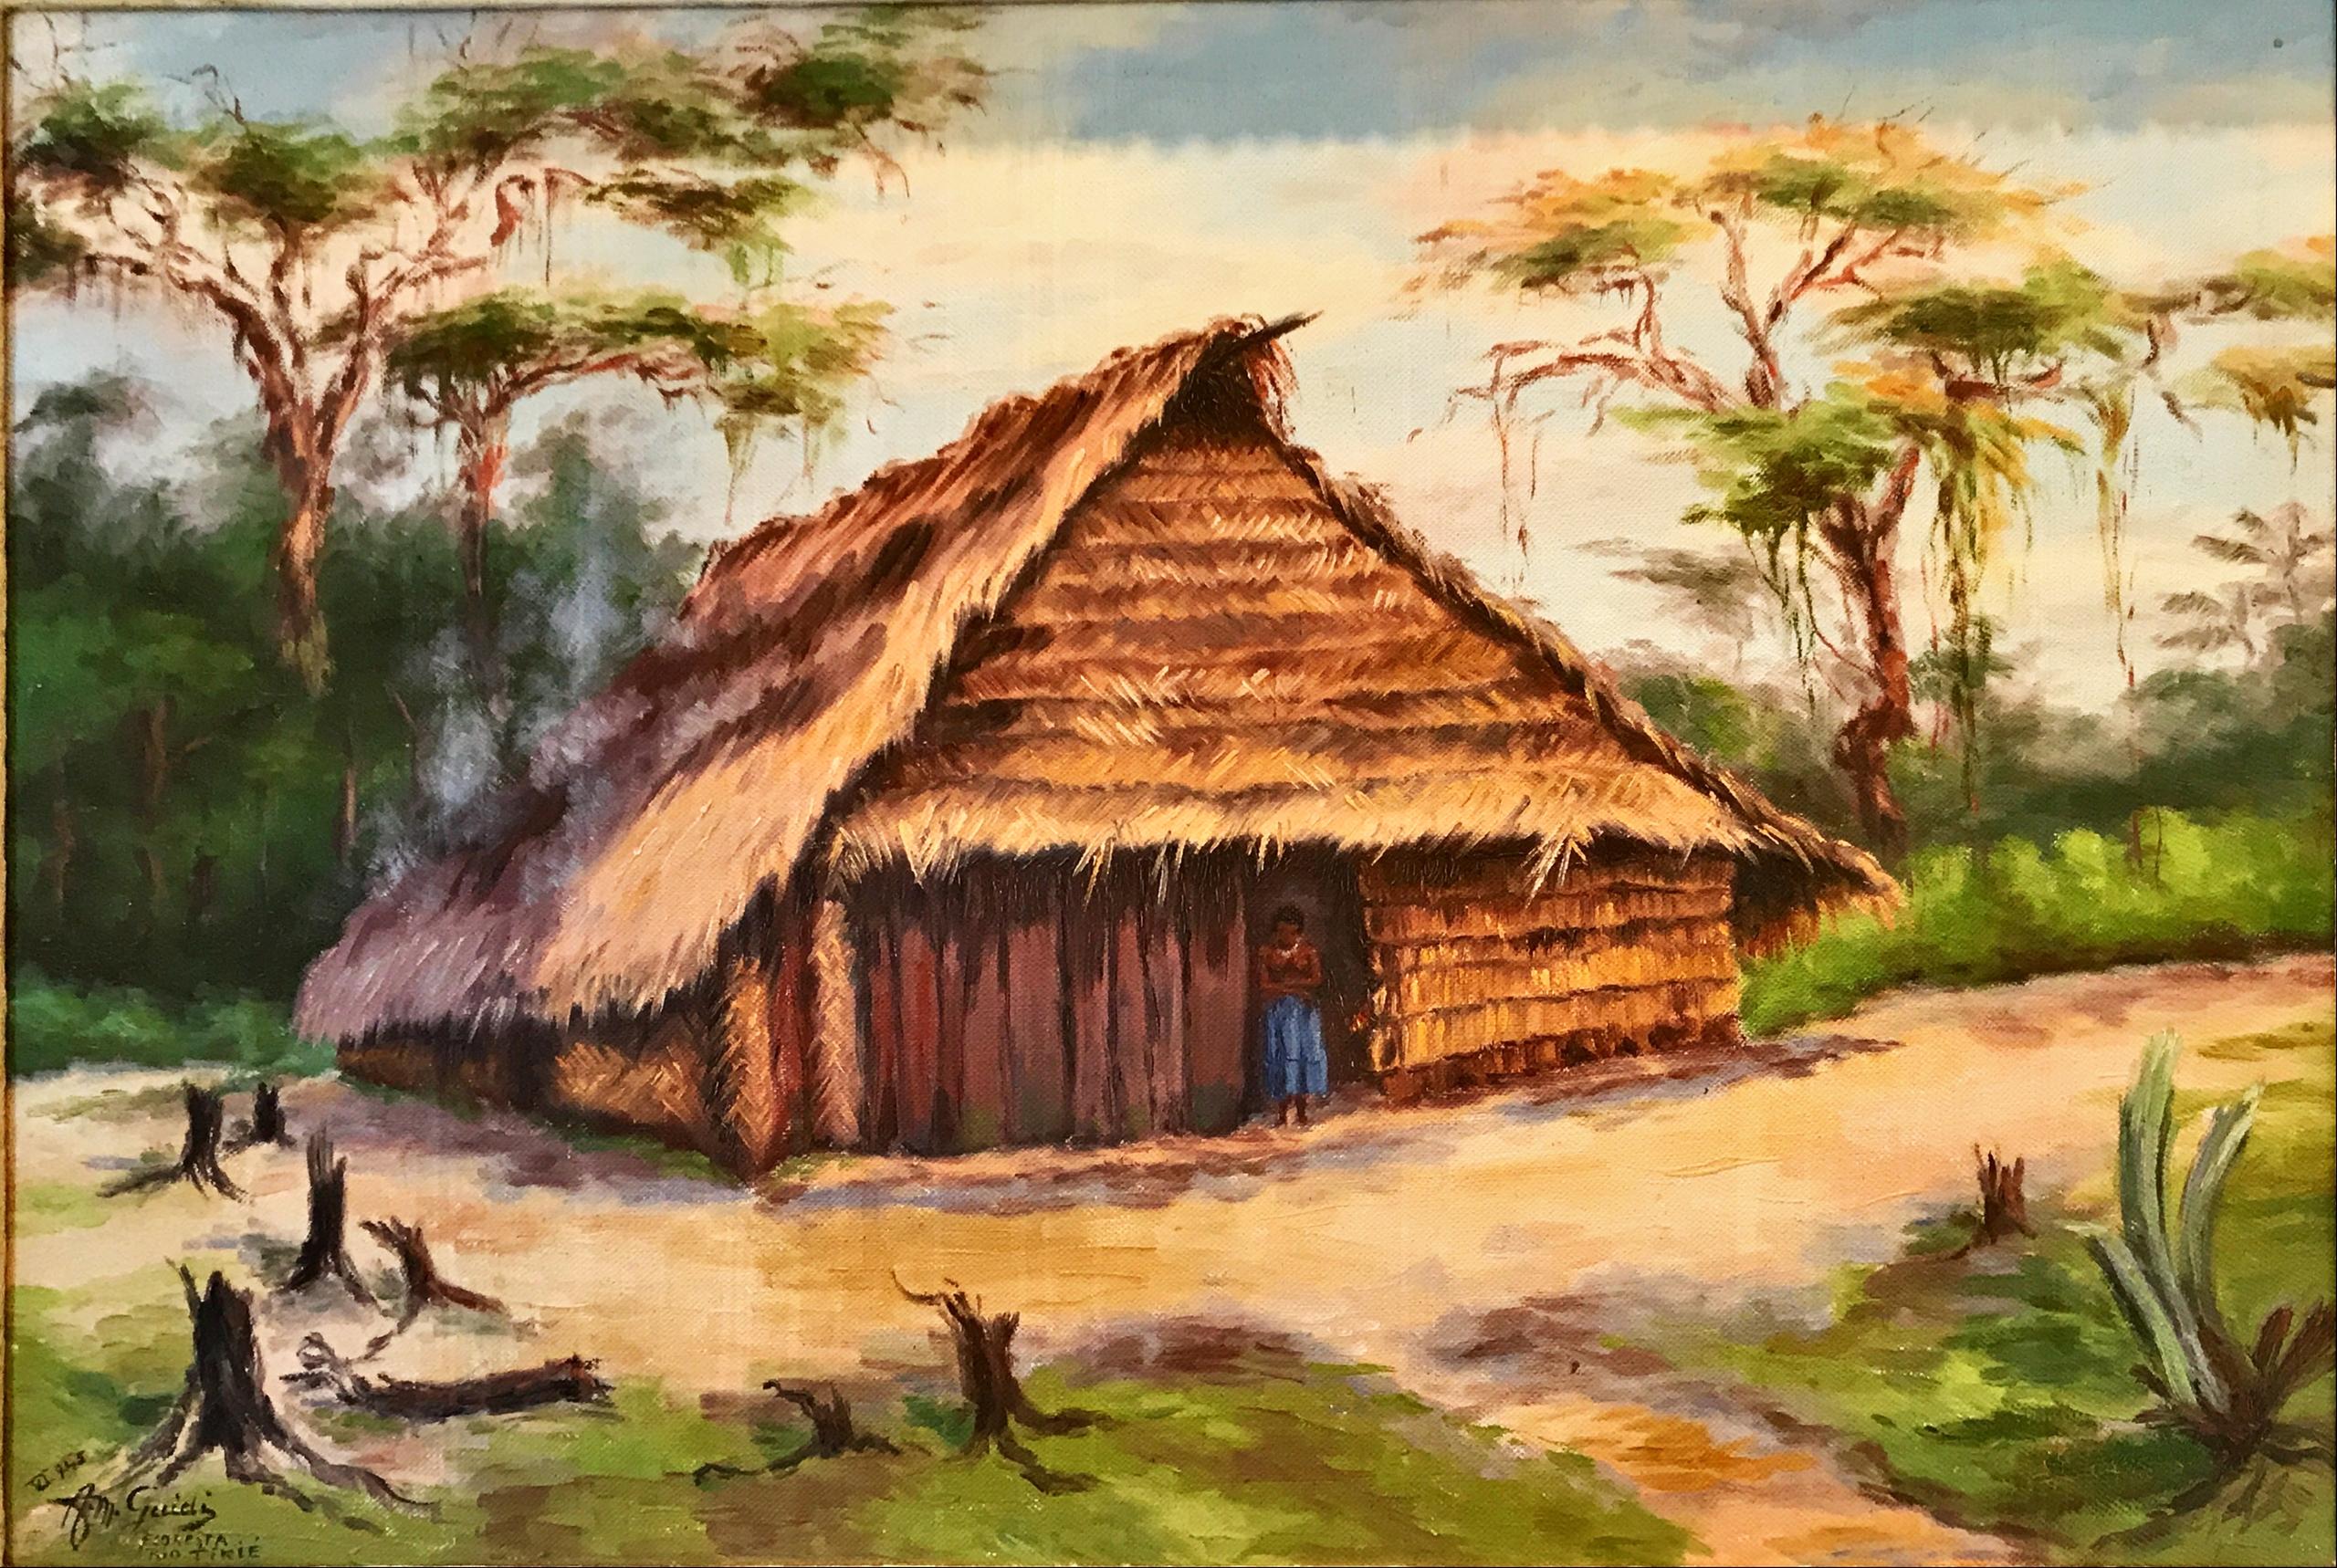 Tableau d une cabane amazonienne.